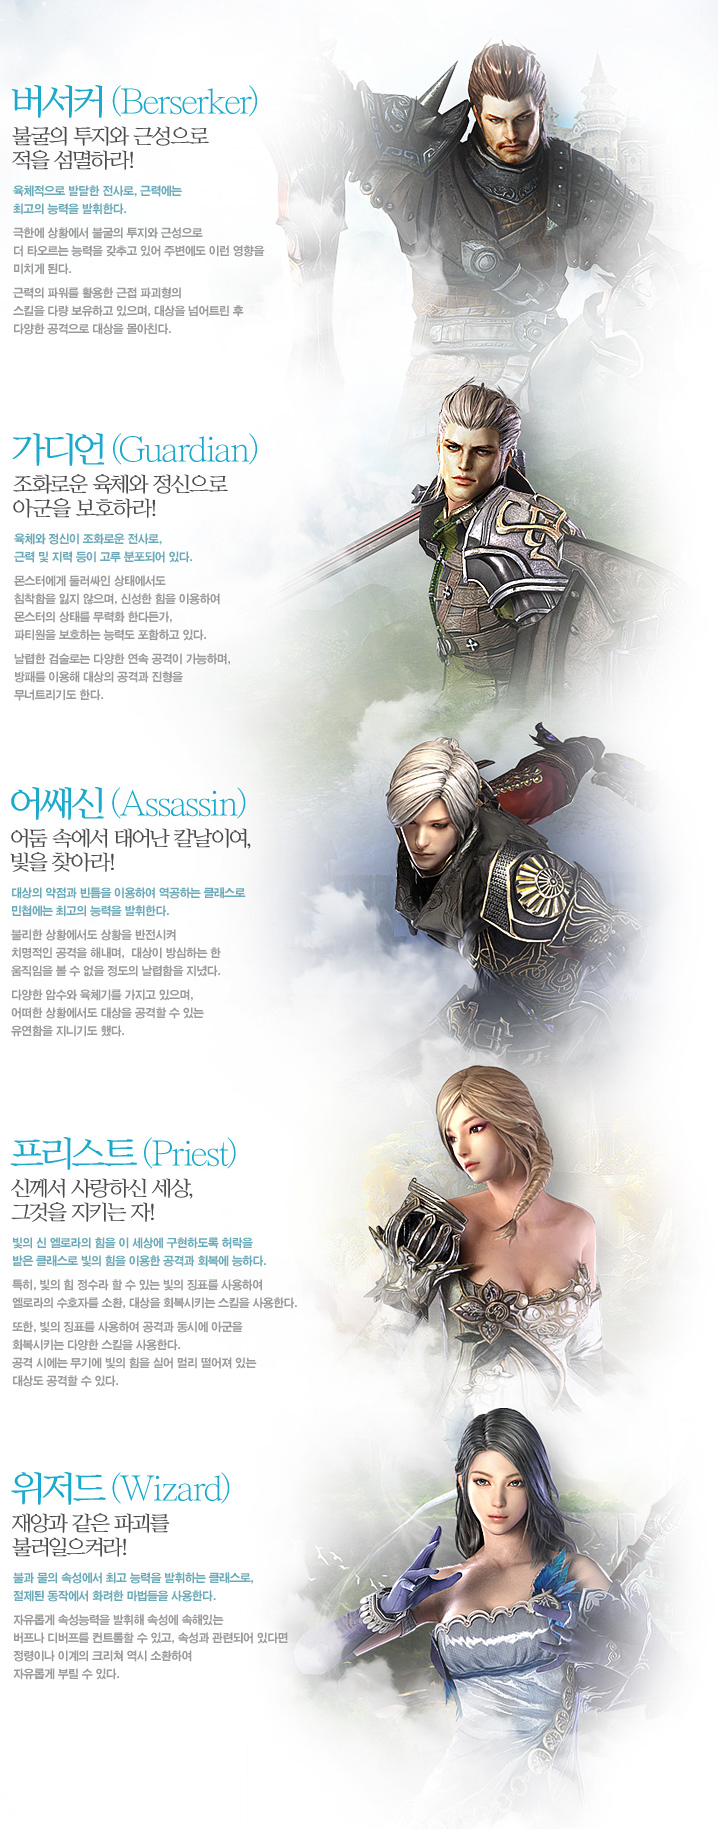 Icarus - Game online Hàn tuyệt đẹp chuẩn bị mở cửa 2